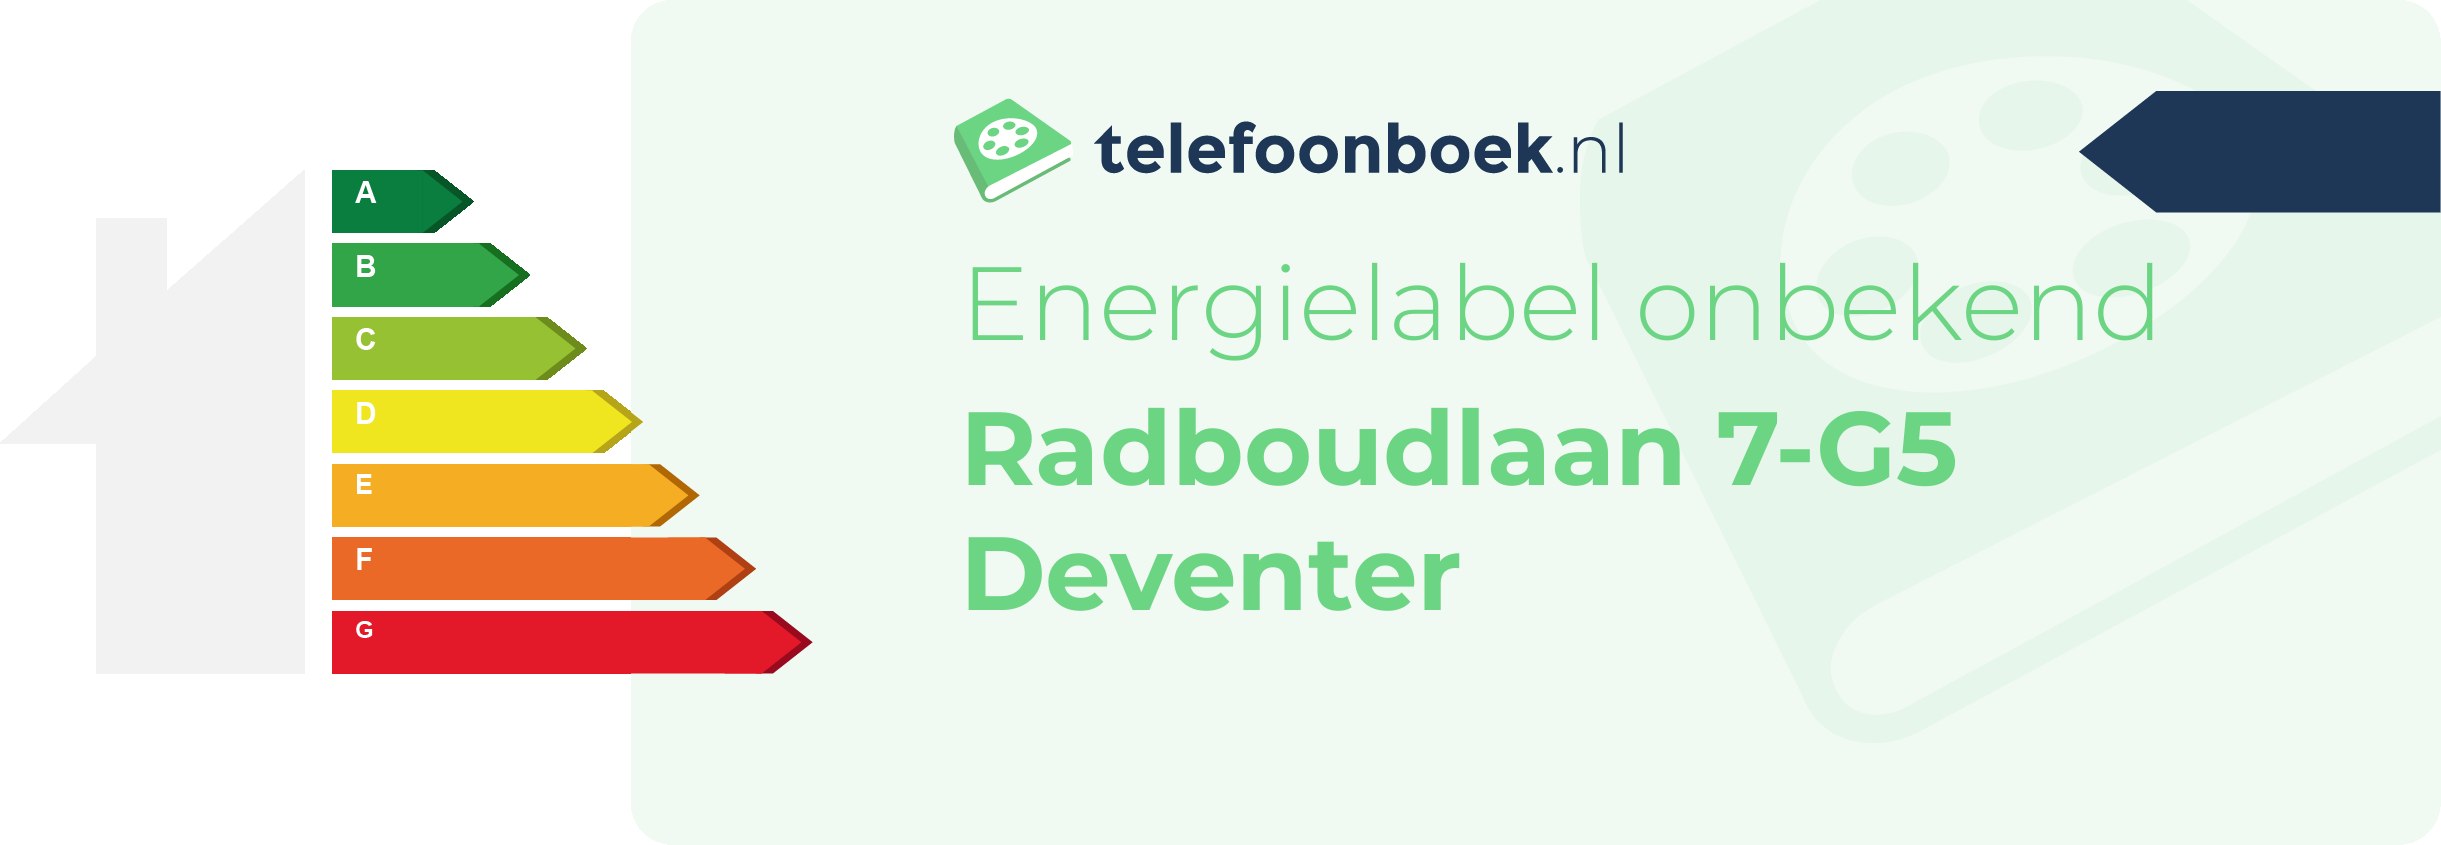 Energielabel Radboudlaan 7-G5 Deventer